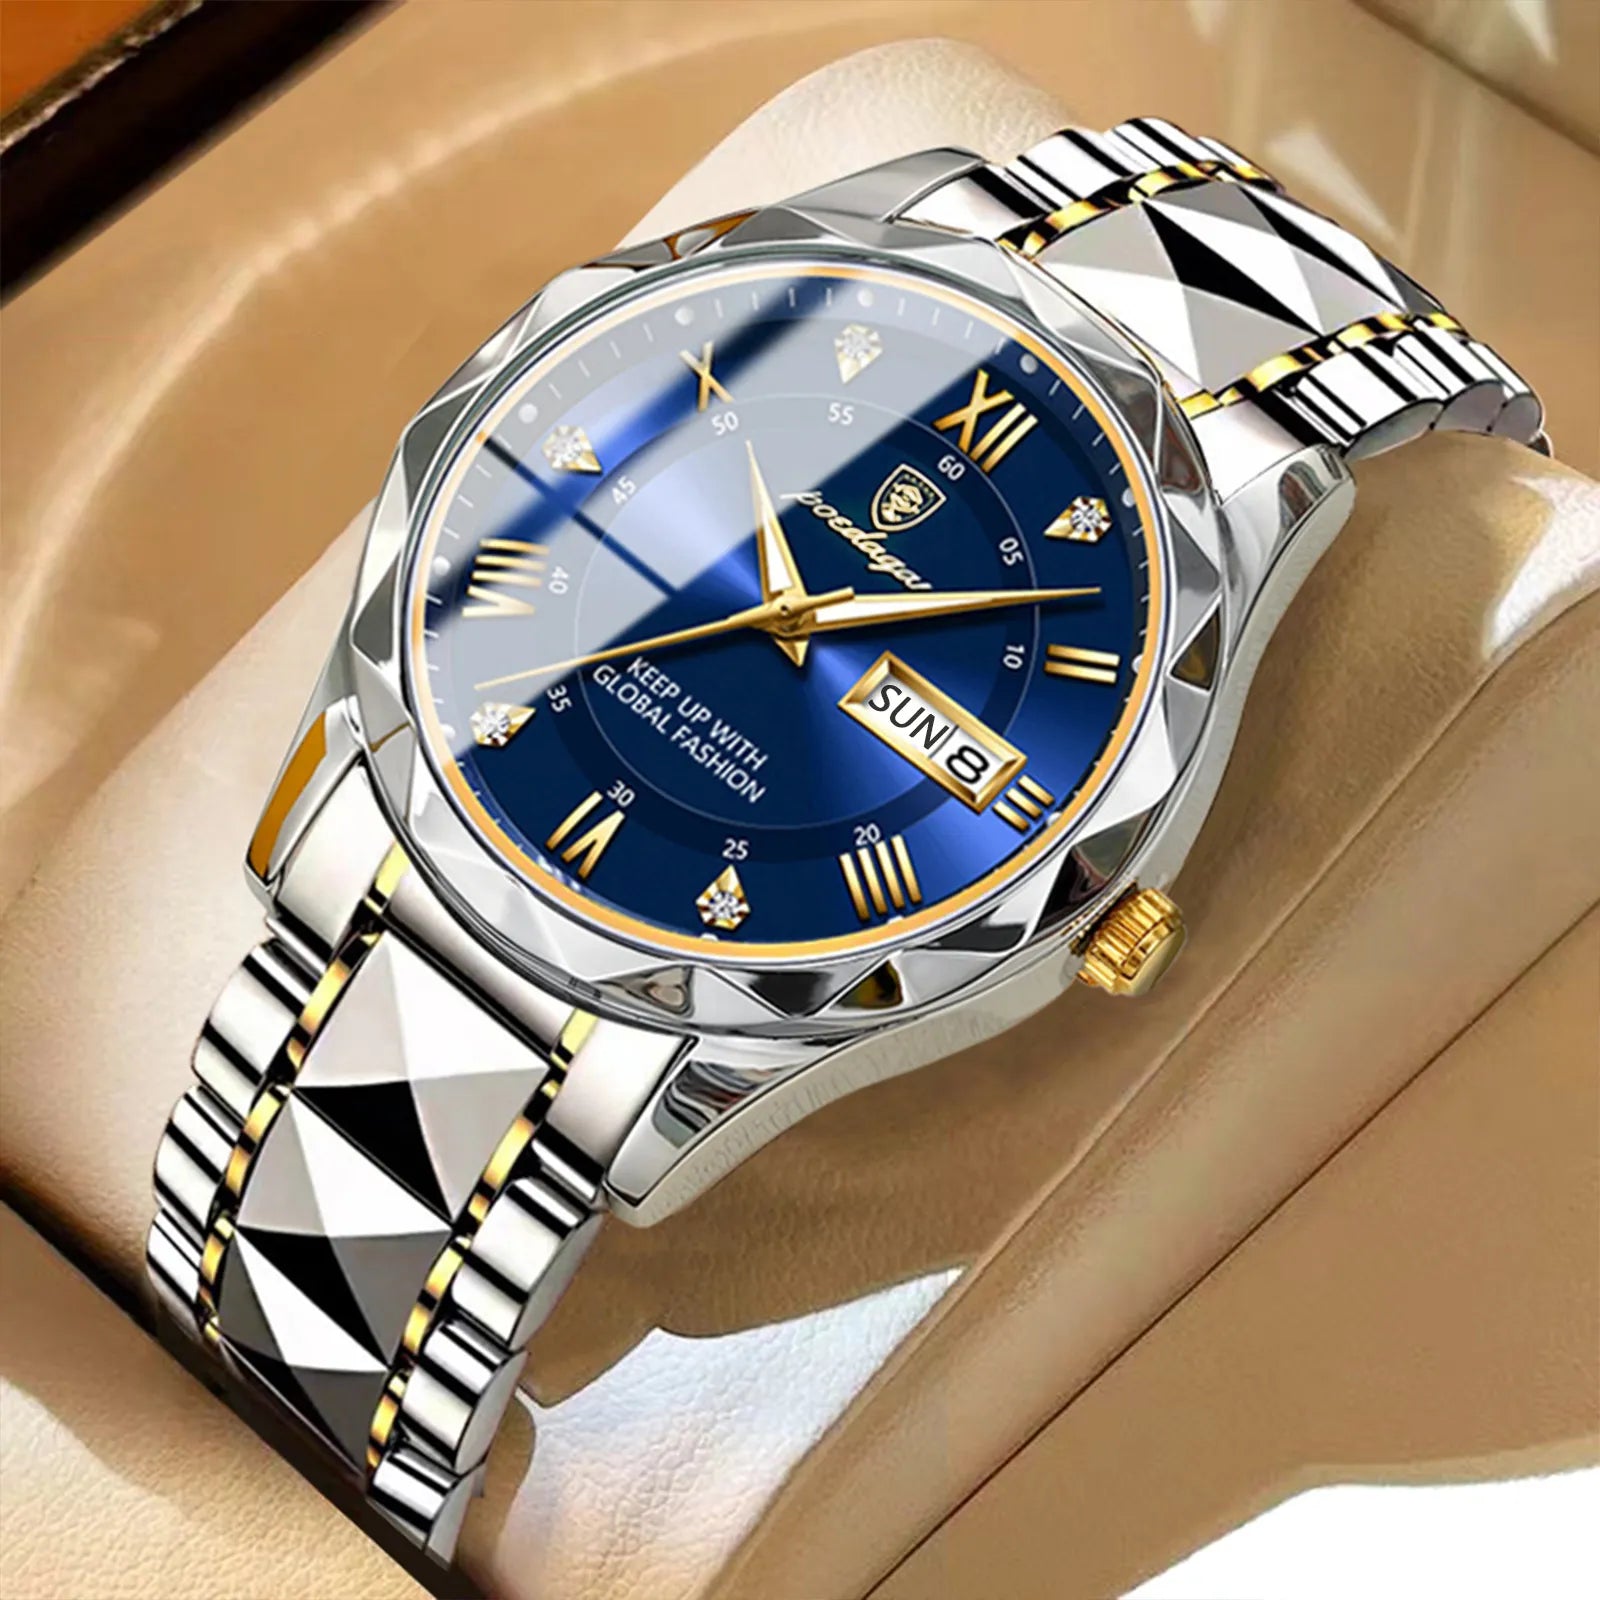 Luxury Men's Stainless Steel Wristwatch with Calendar & Week Display